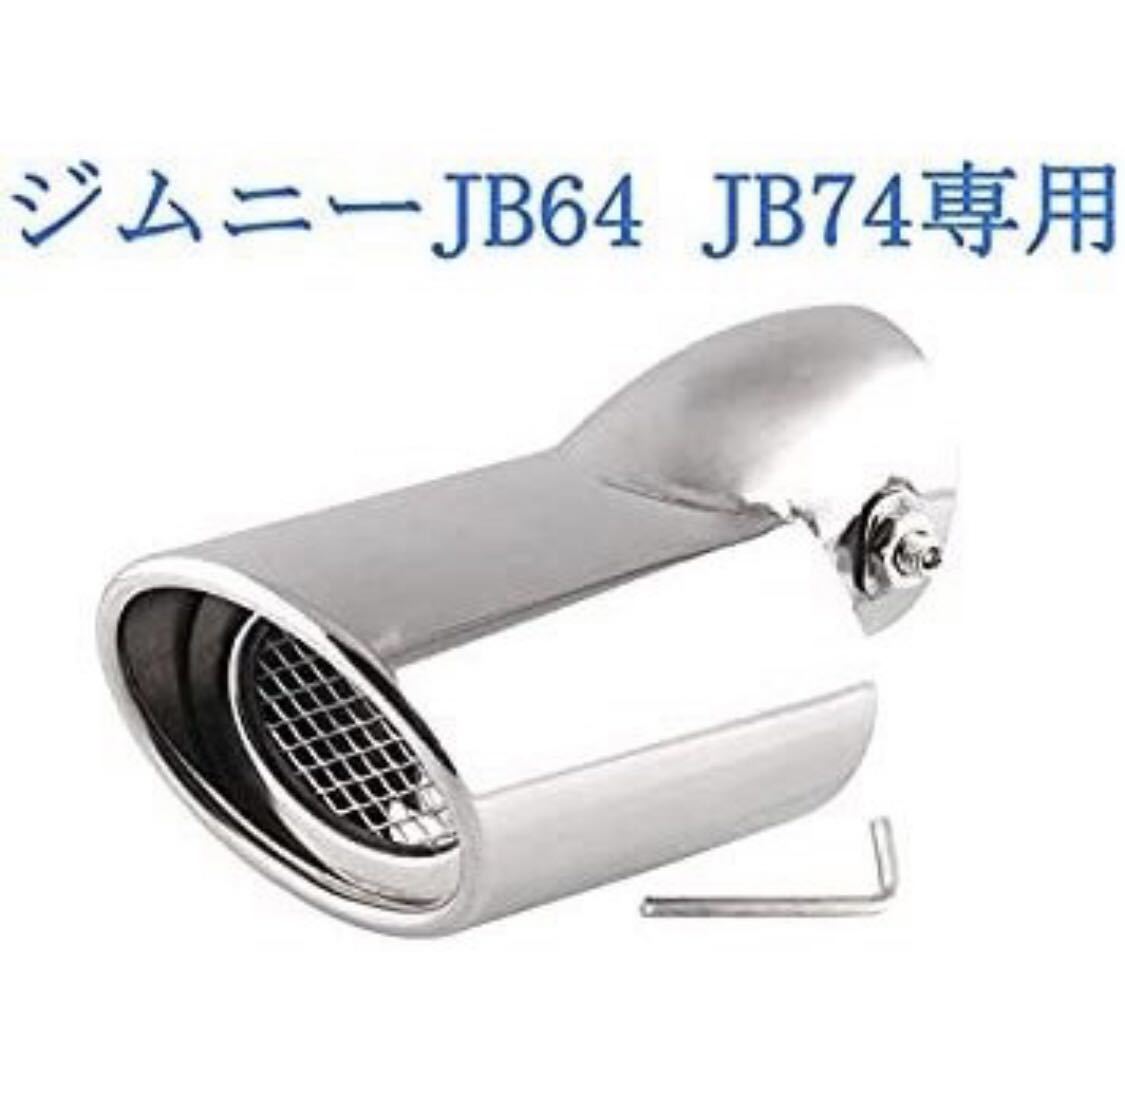 スズキ ジムニー JB64 JB74専用 マフラーカッターシルバー 下向き式 スラッシュカット シングル 簡単取付 後付け 重厚感有り_画像4